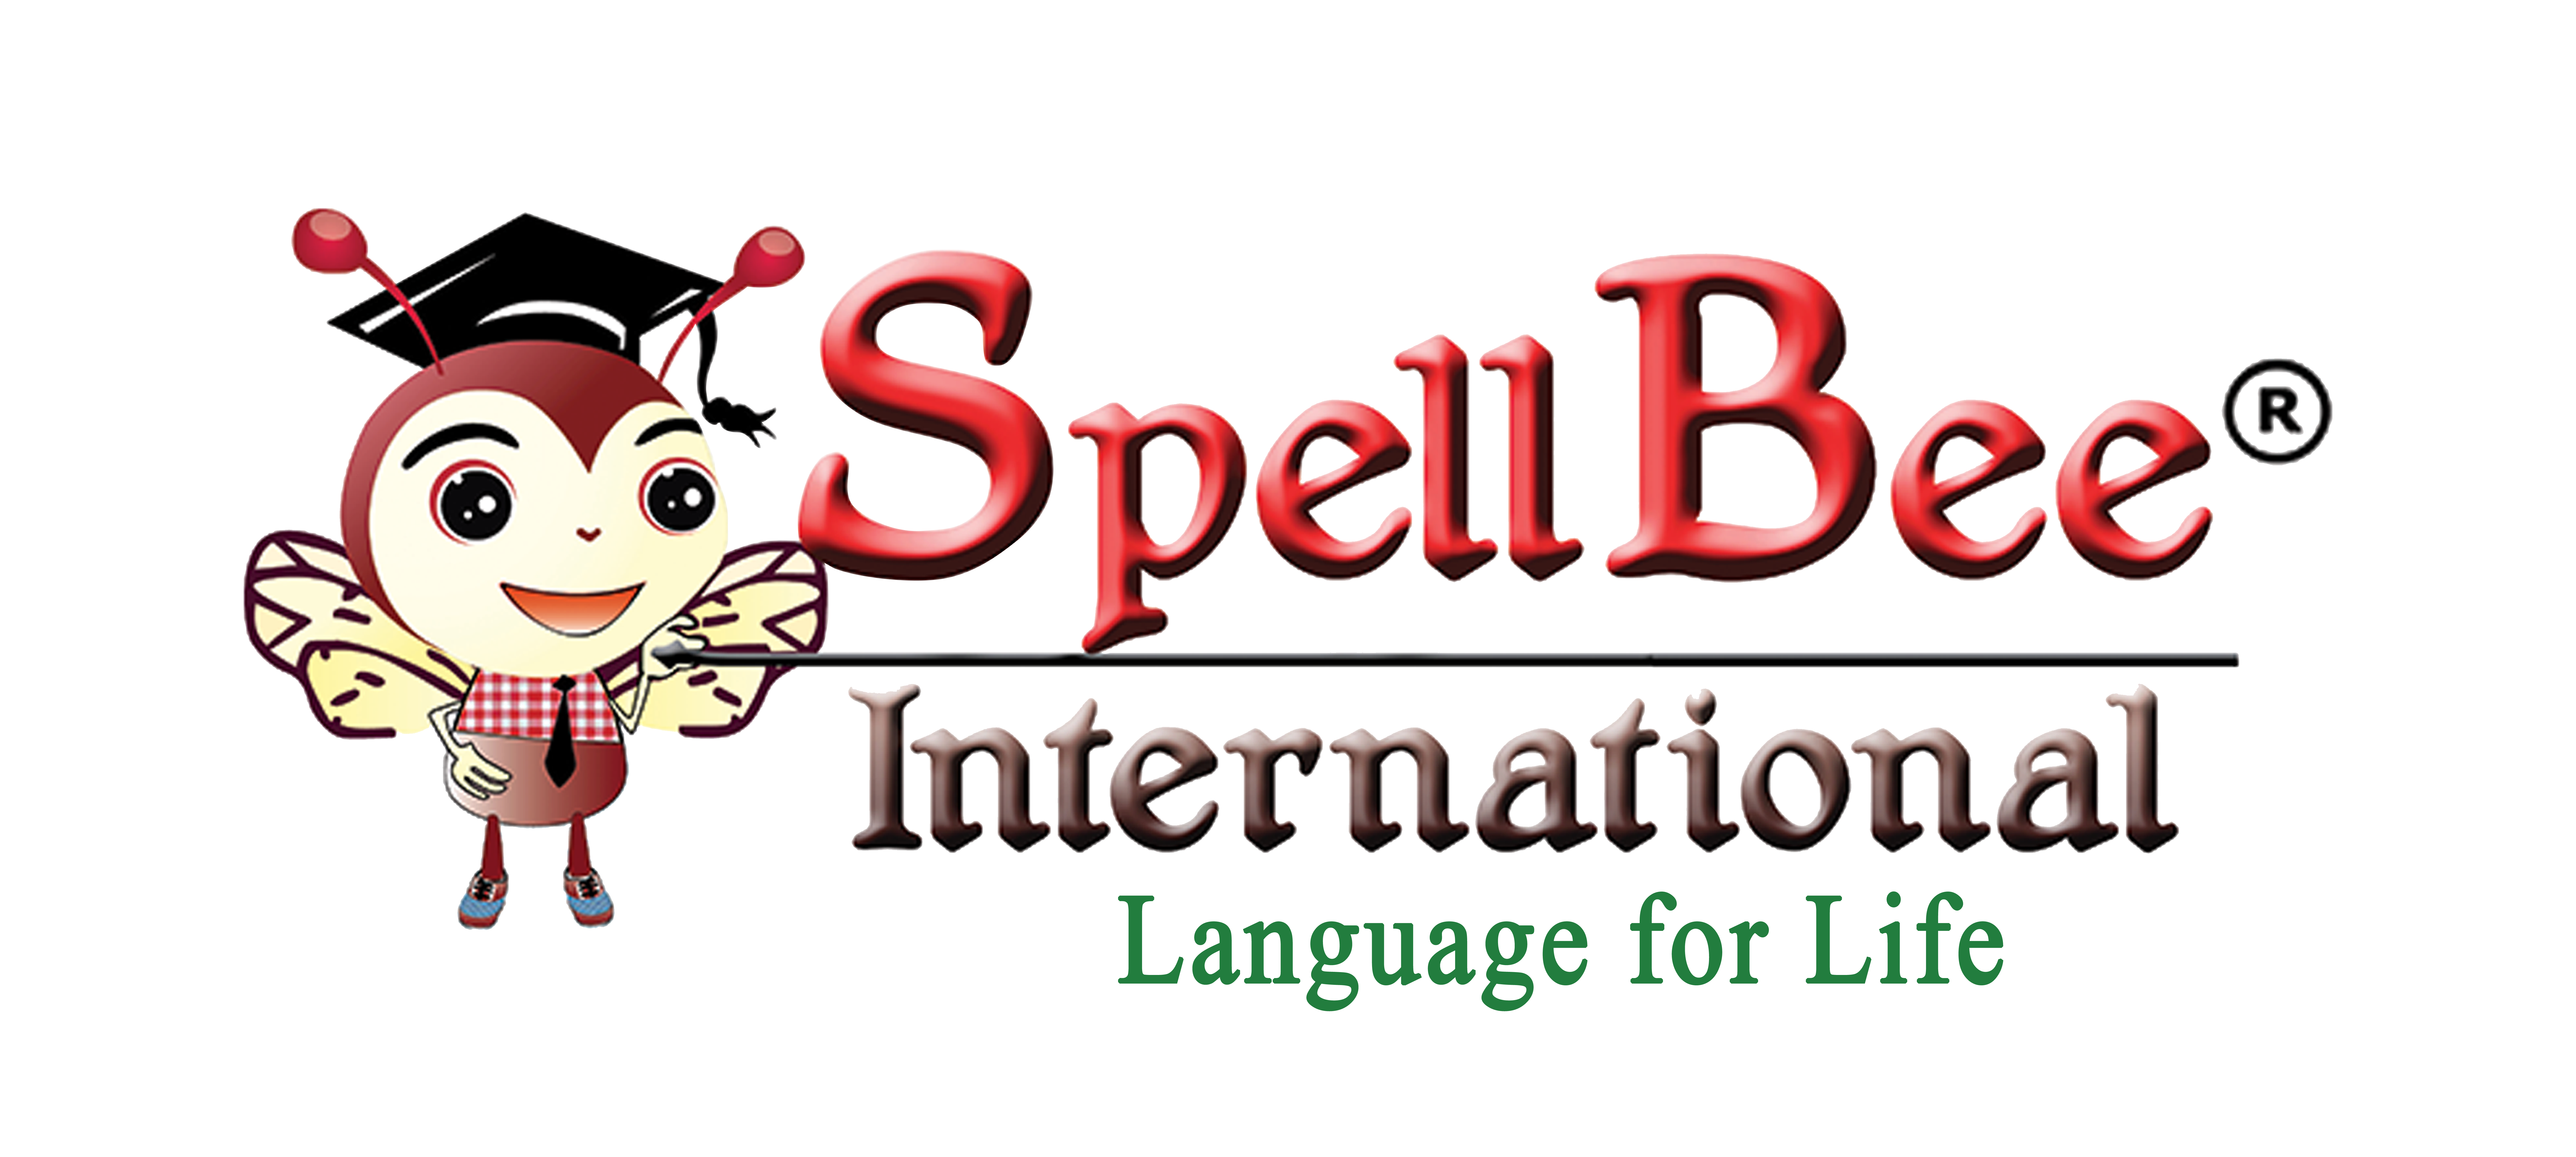 Spellbee International Registration